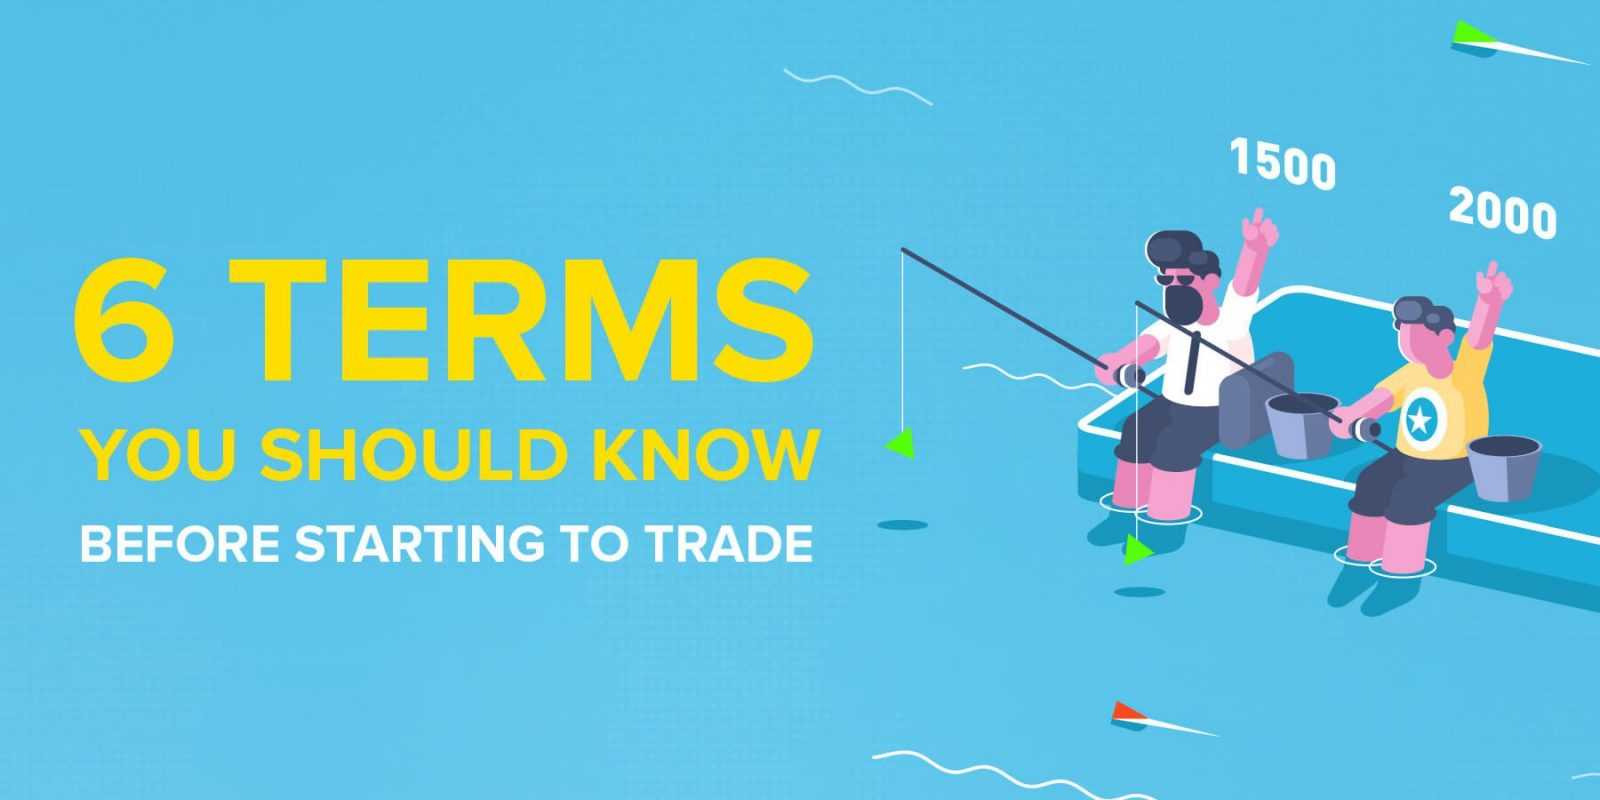 6 Điều khoản Mỗi Nhà giao dịch nên biết trước khi bắt đầu giao dịch